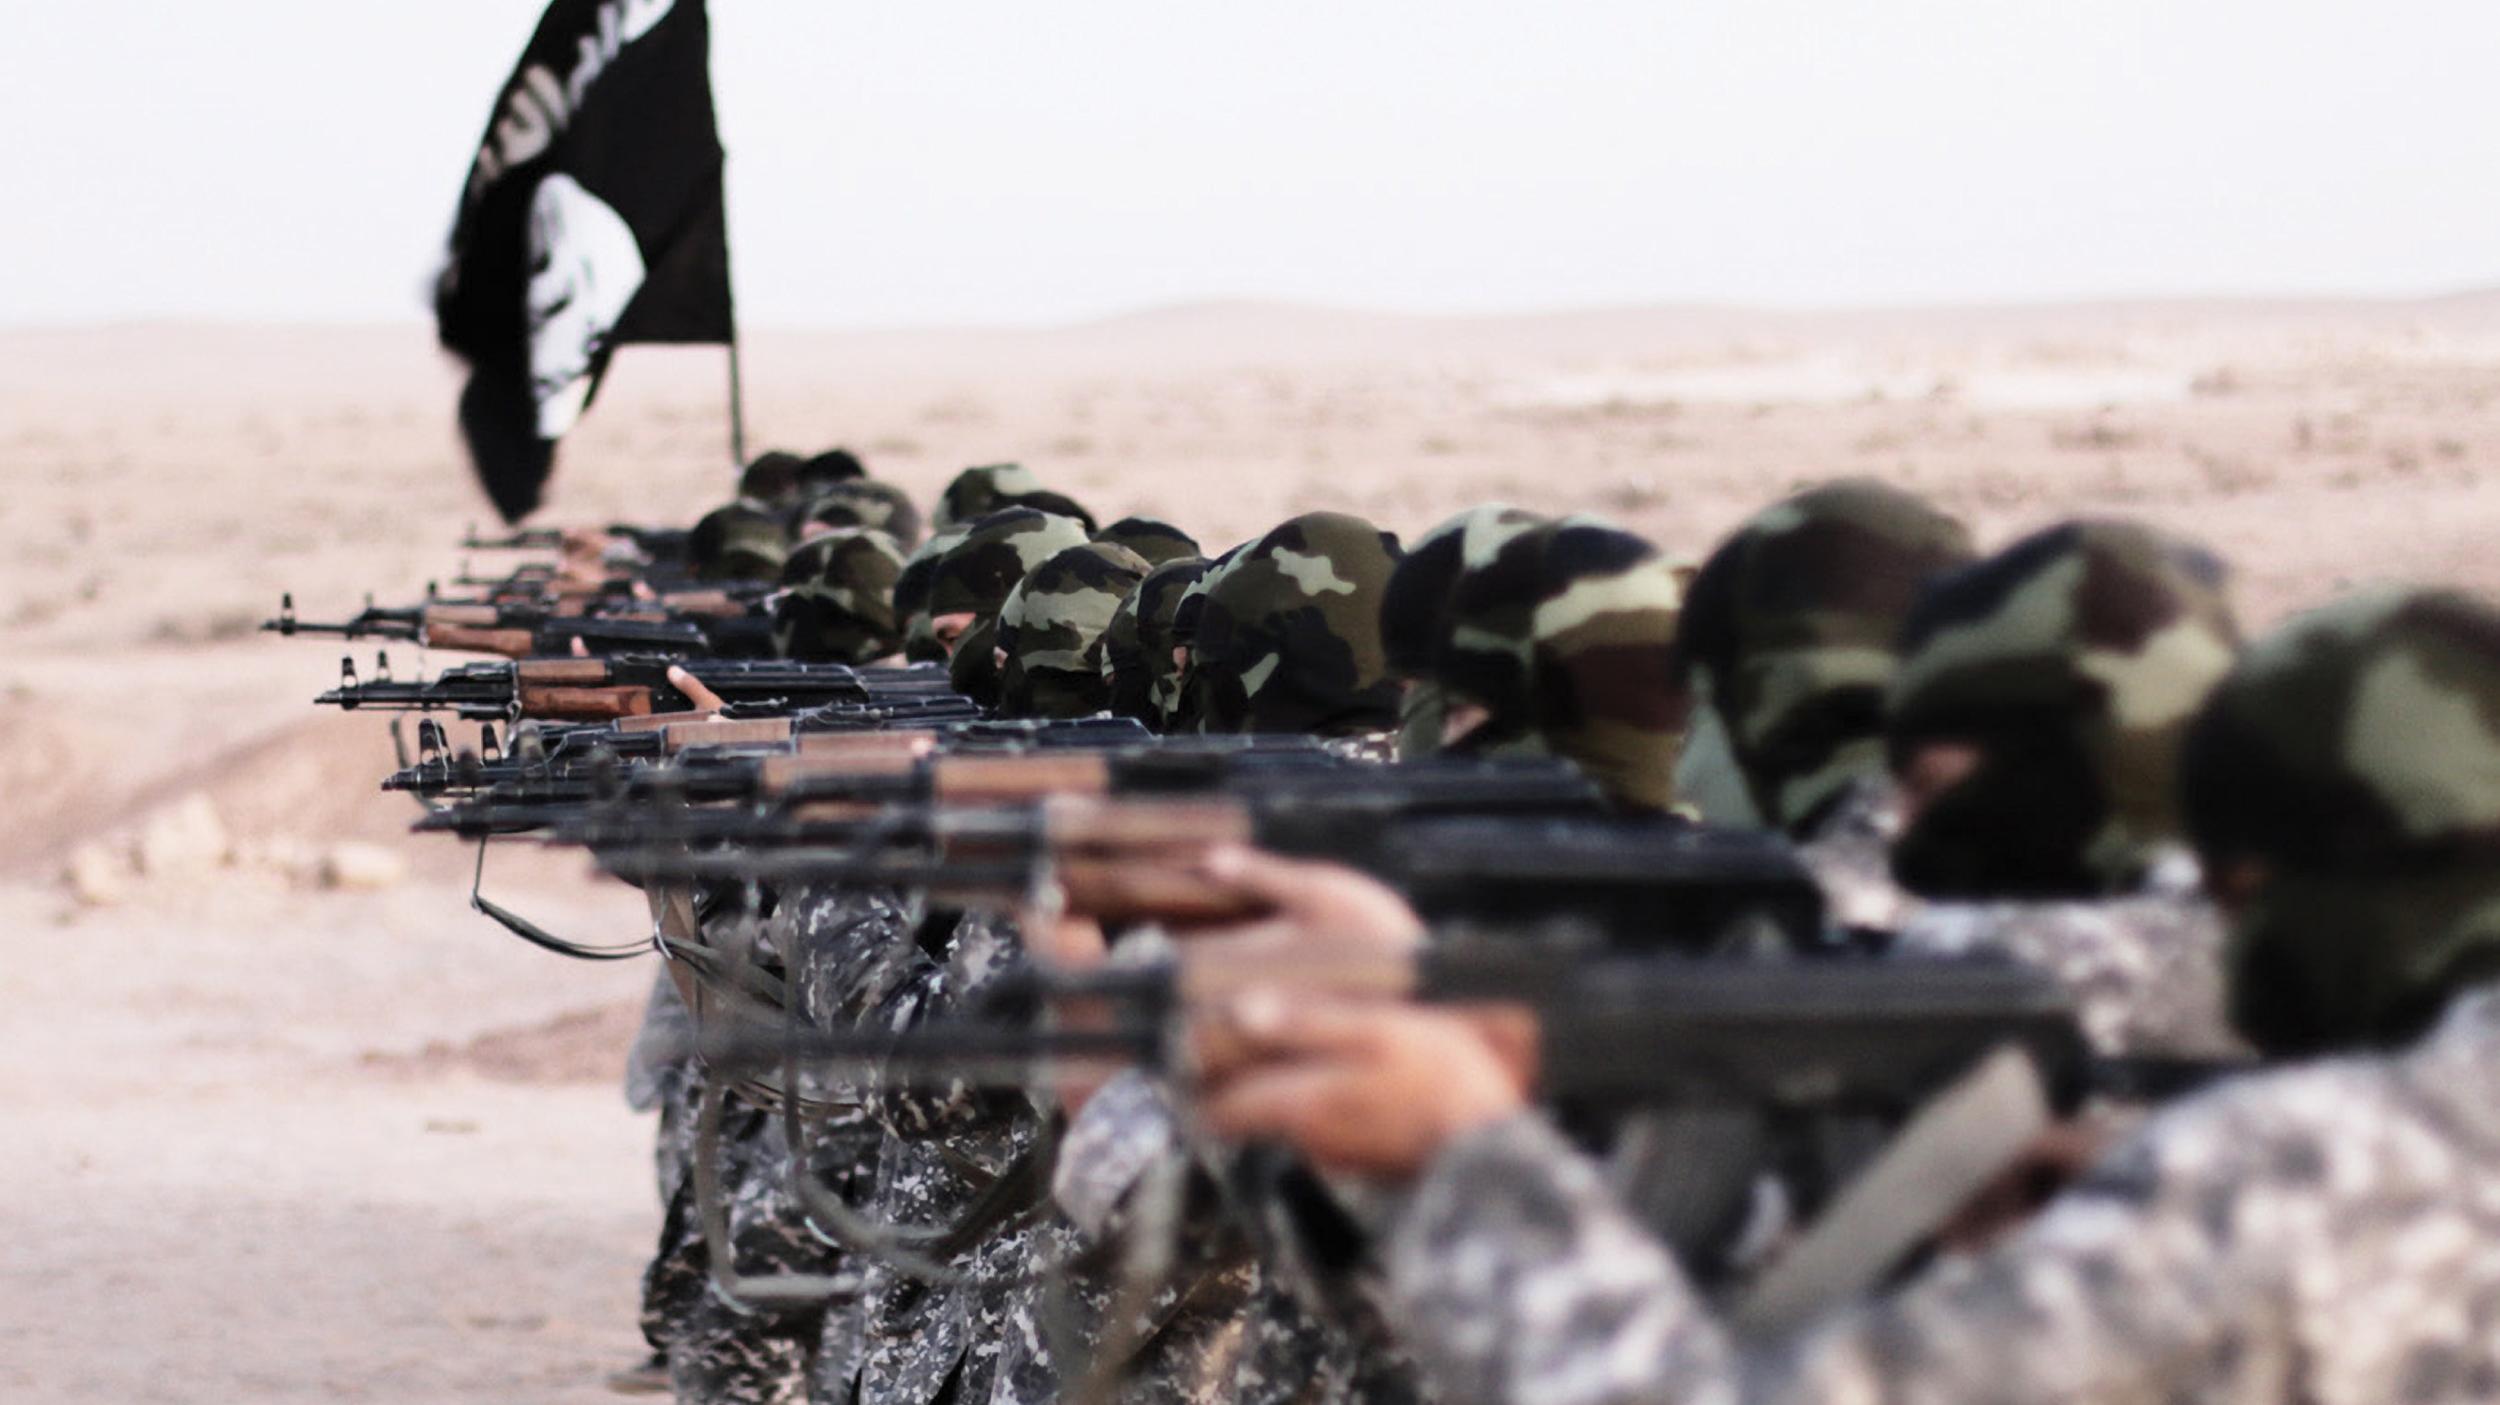 مكافحة الإرهاب ـ  ثالوث مصادر تسليح تنظيم "داعش"